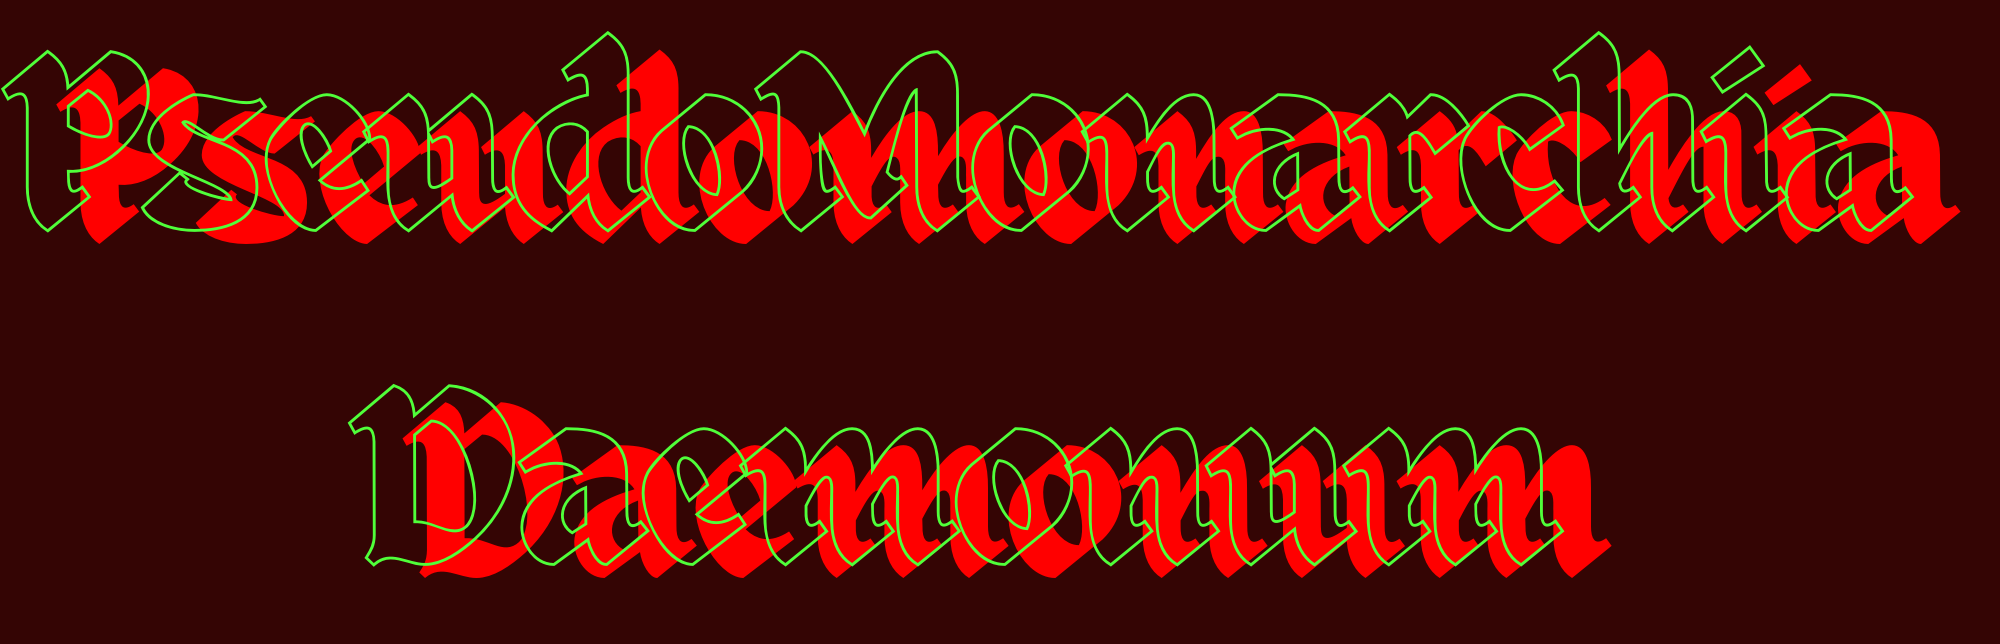 Pseudomonarchia Daemonum